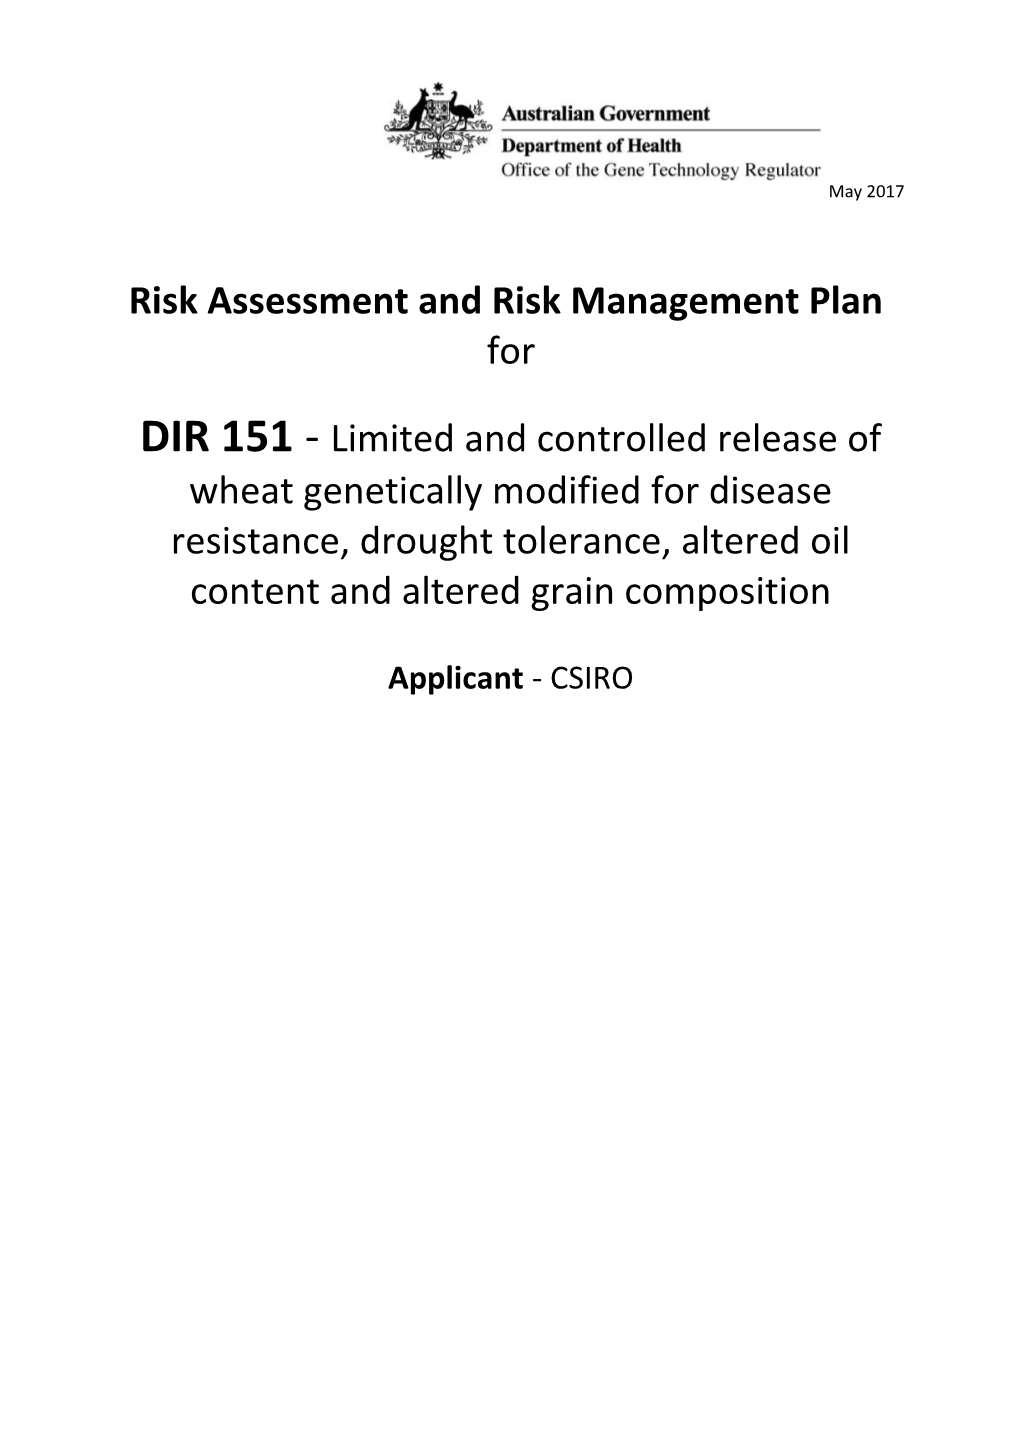 DIR 151 - Full Risk Assessment and Risk Management Plan